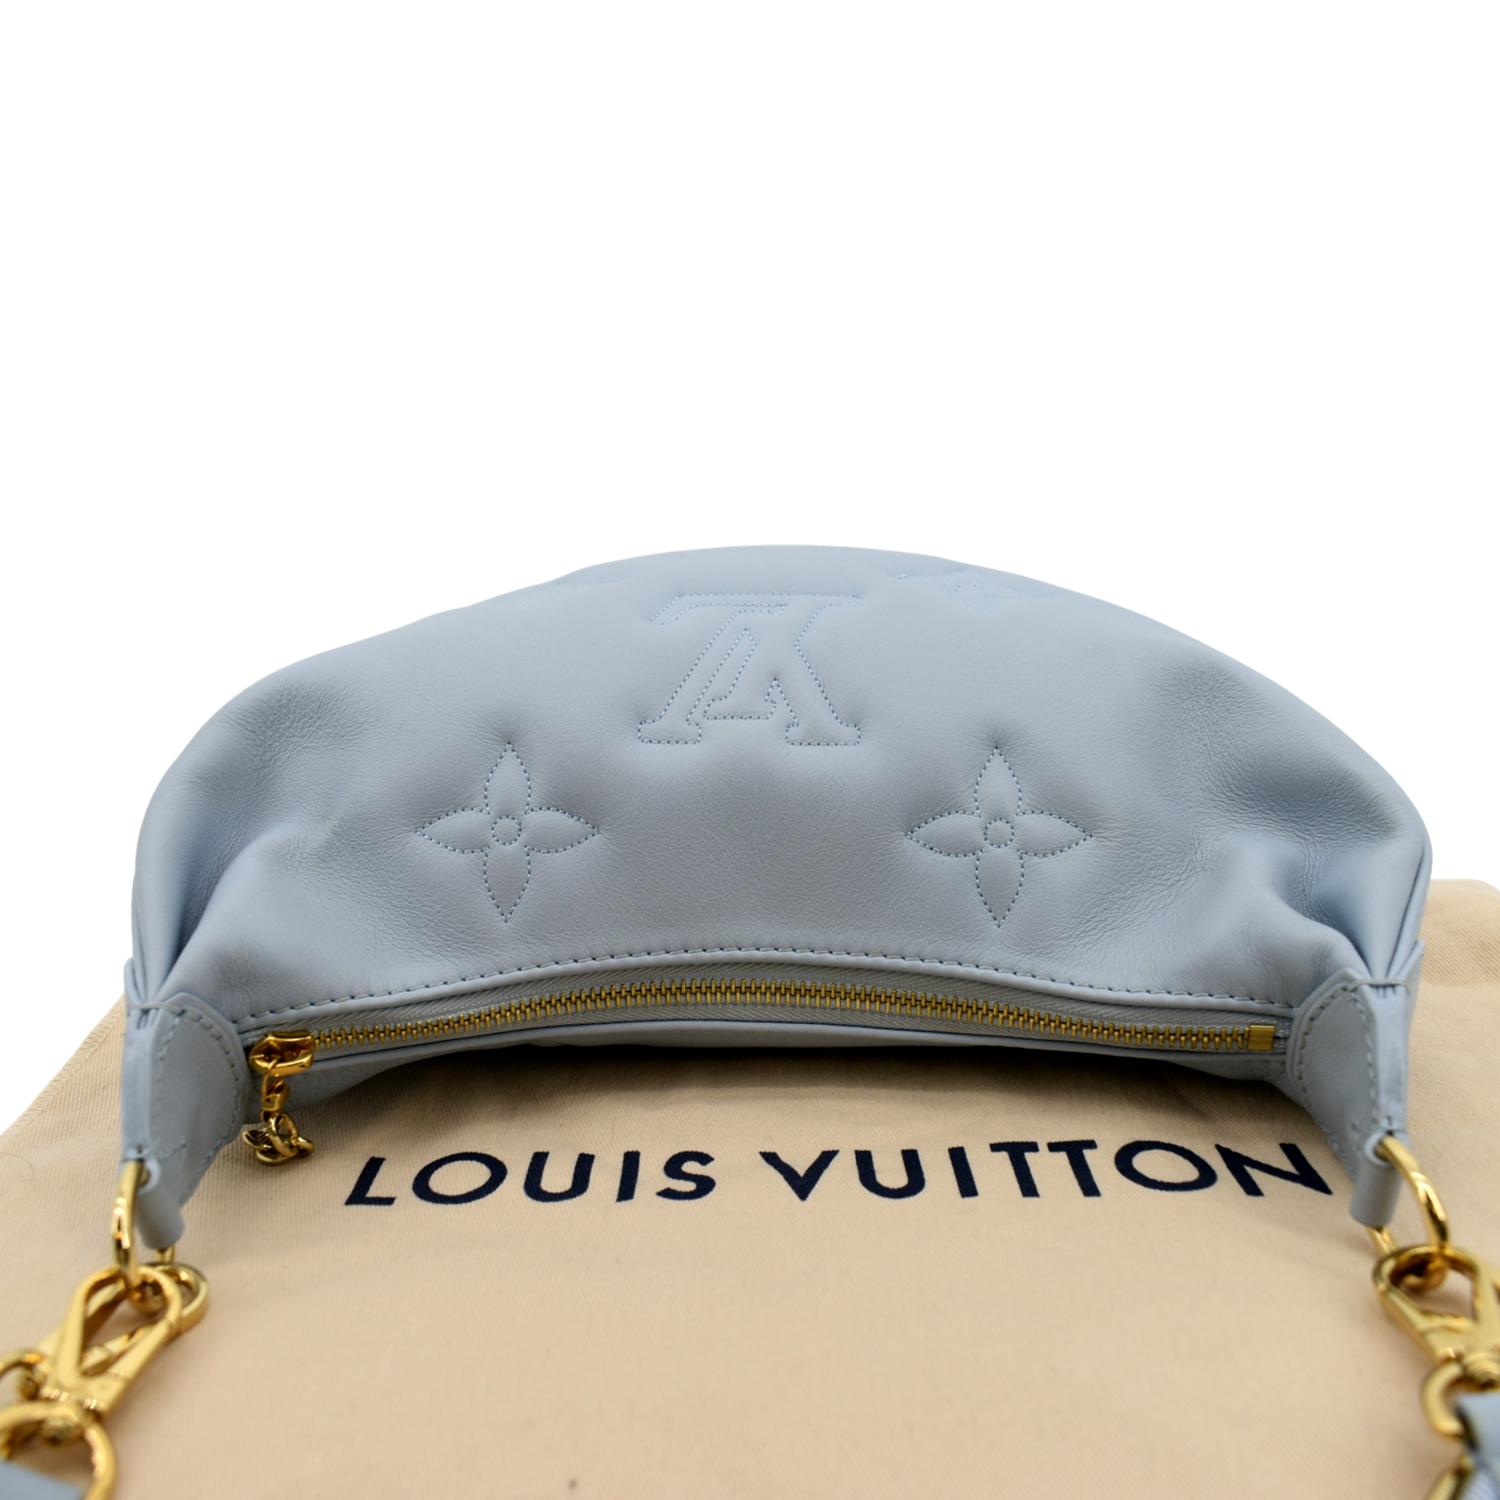 Louis Vuitton Over The Moon Glacier Calf